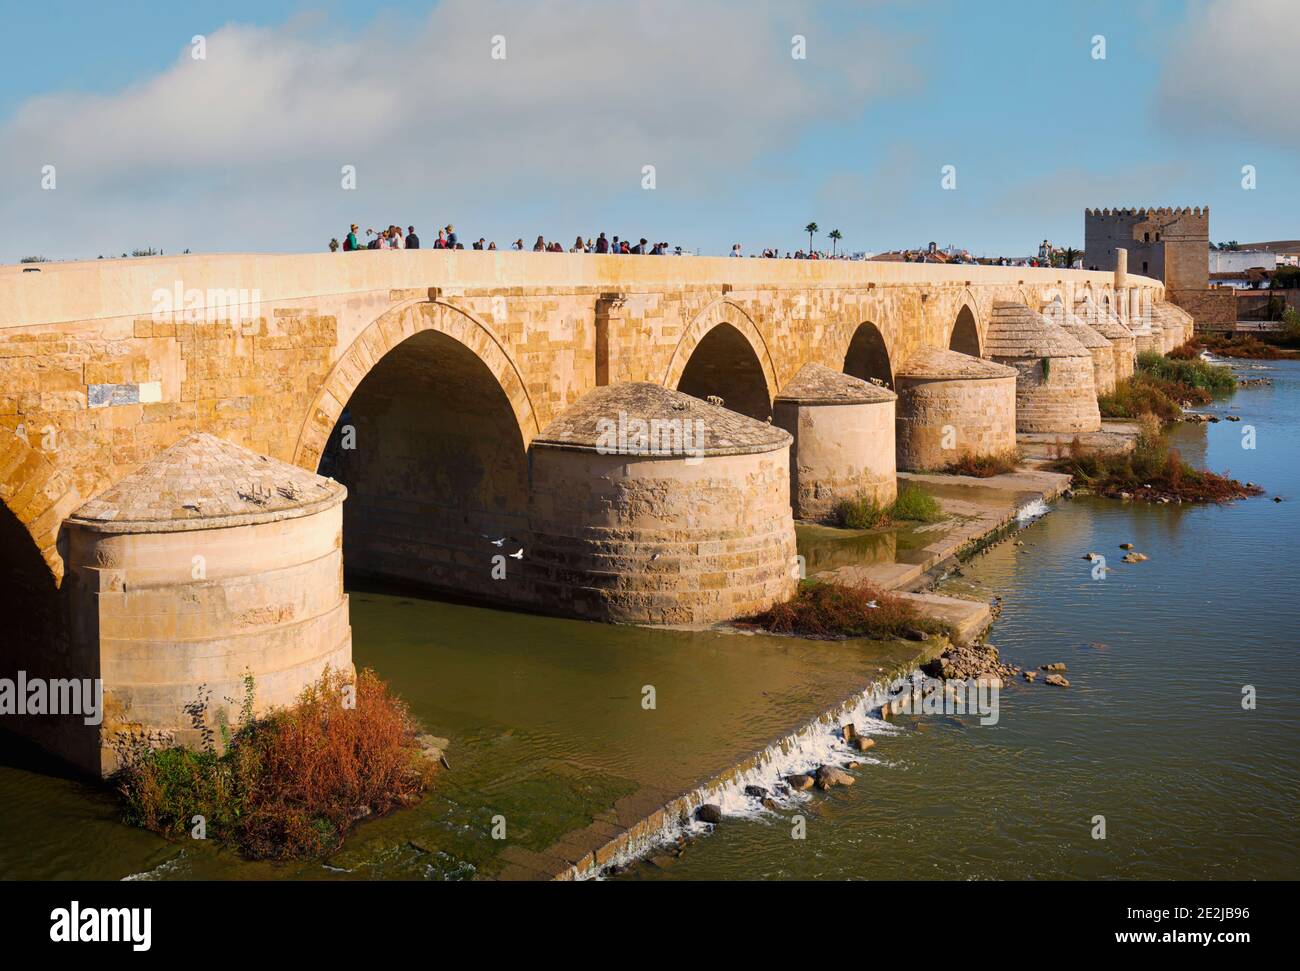 El puente romano a través del río Guadalquivir. Los orígenes del puente se remontan al primer siglo antes de Cristo, a la Córdoba romana. Ha sido reconstruido Foto de stock